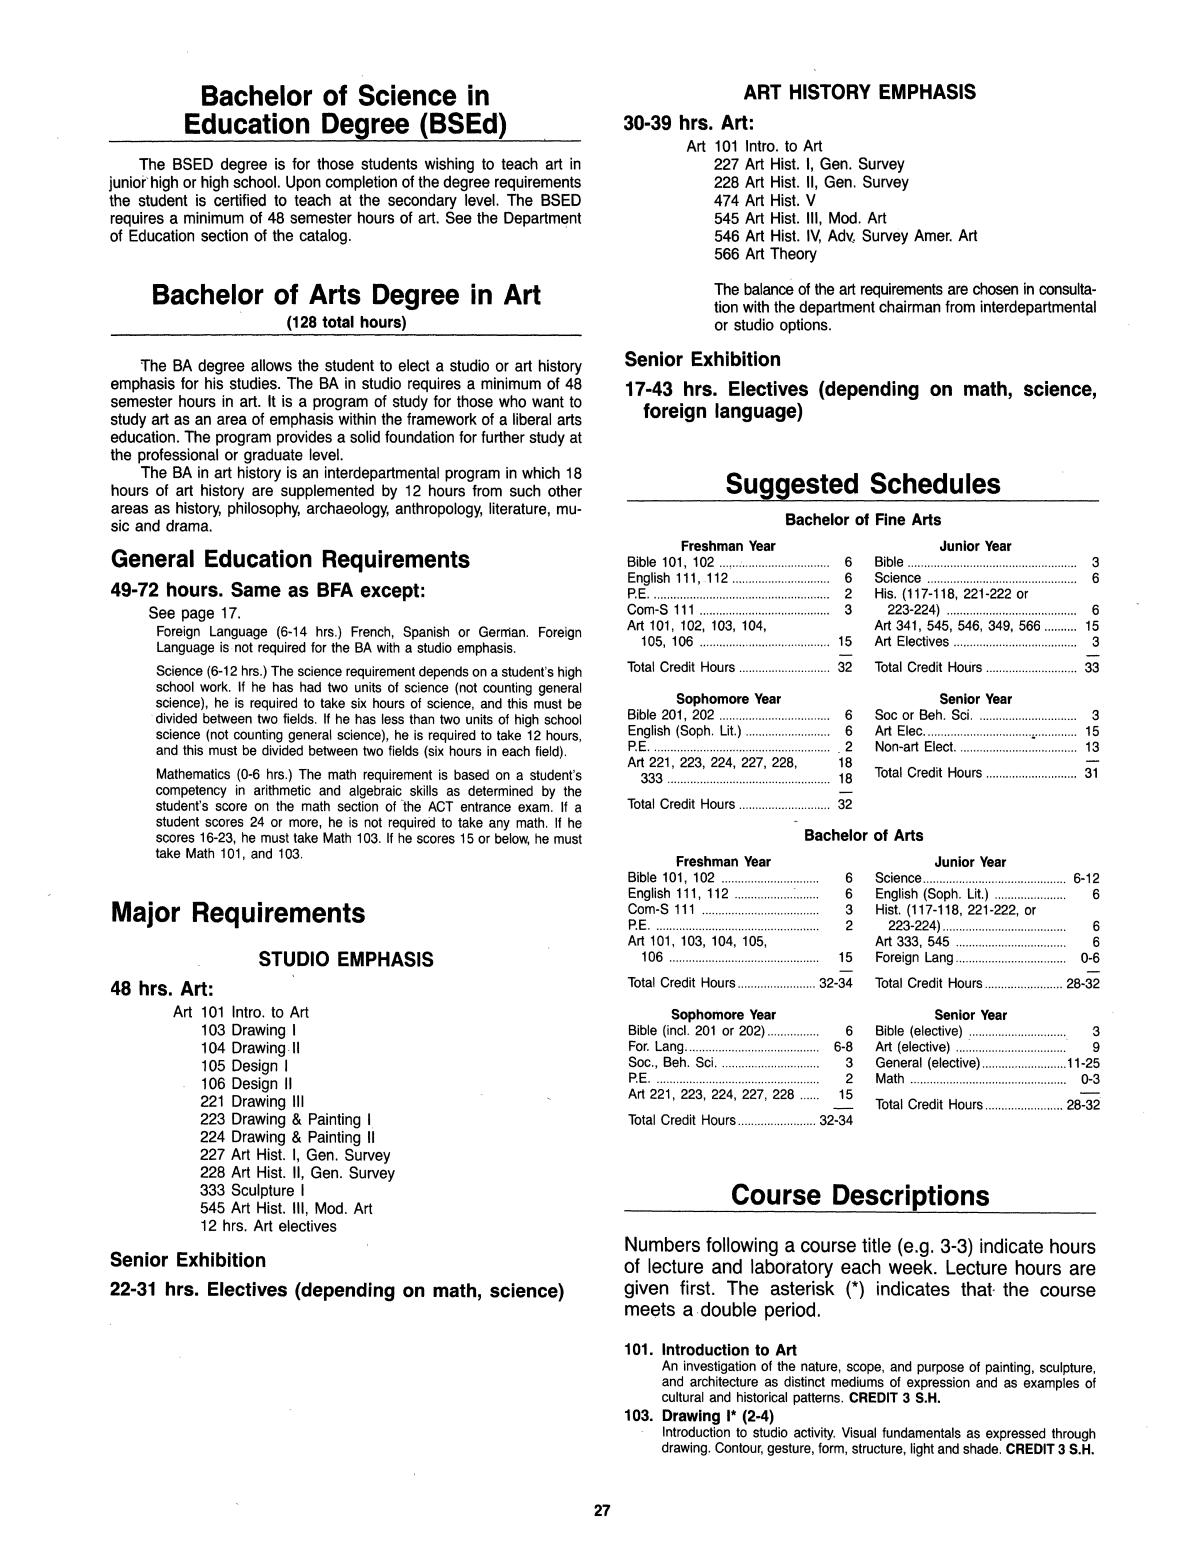 Catalog of Abilene Christian University, 1985-1986
                                                
                                                    27
                                                